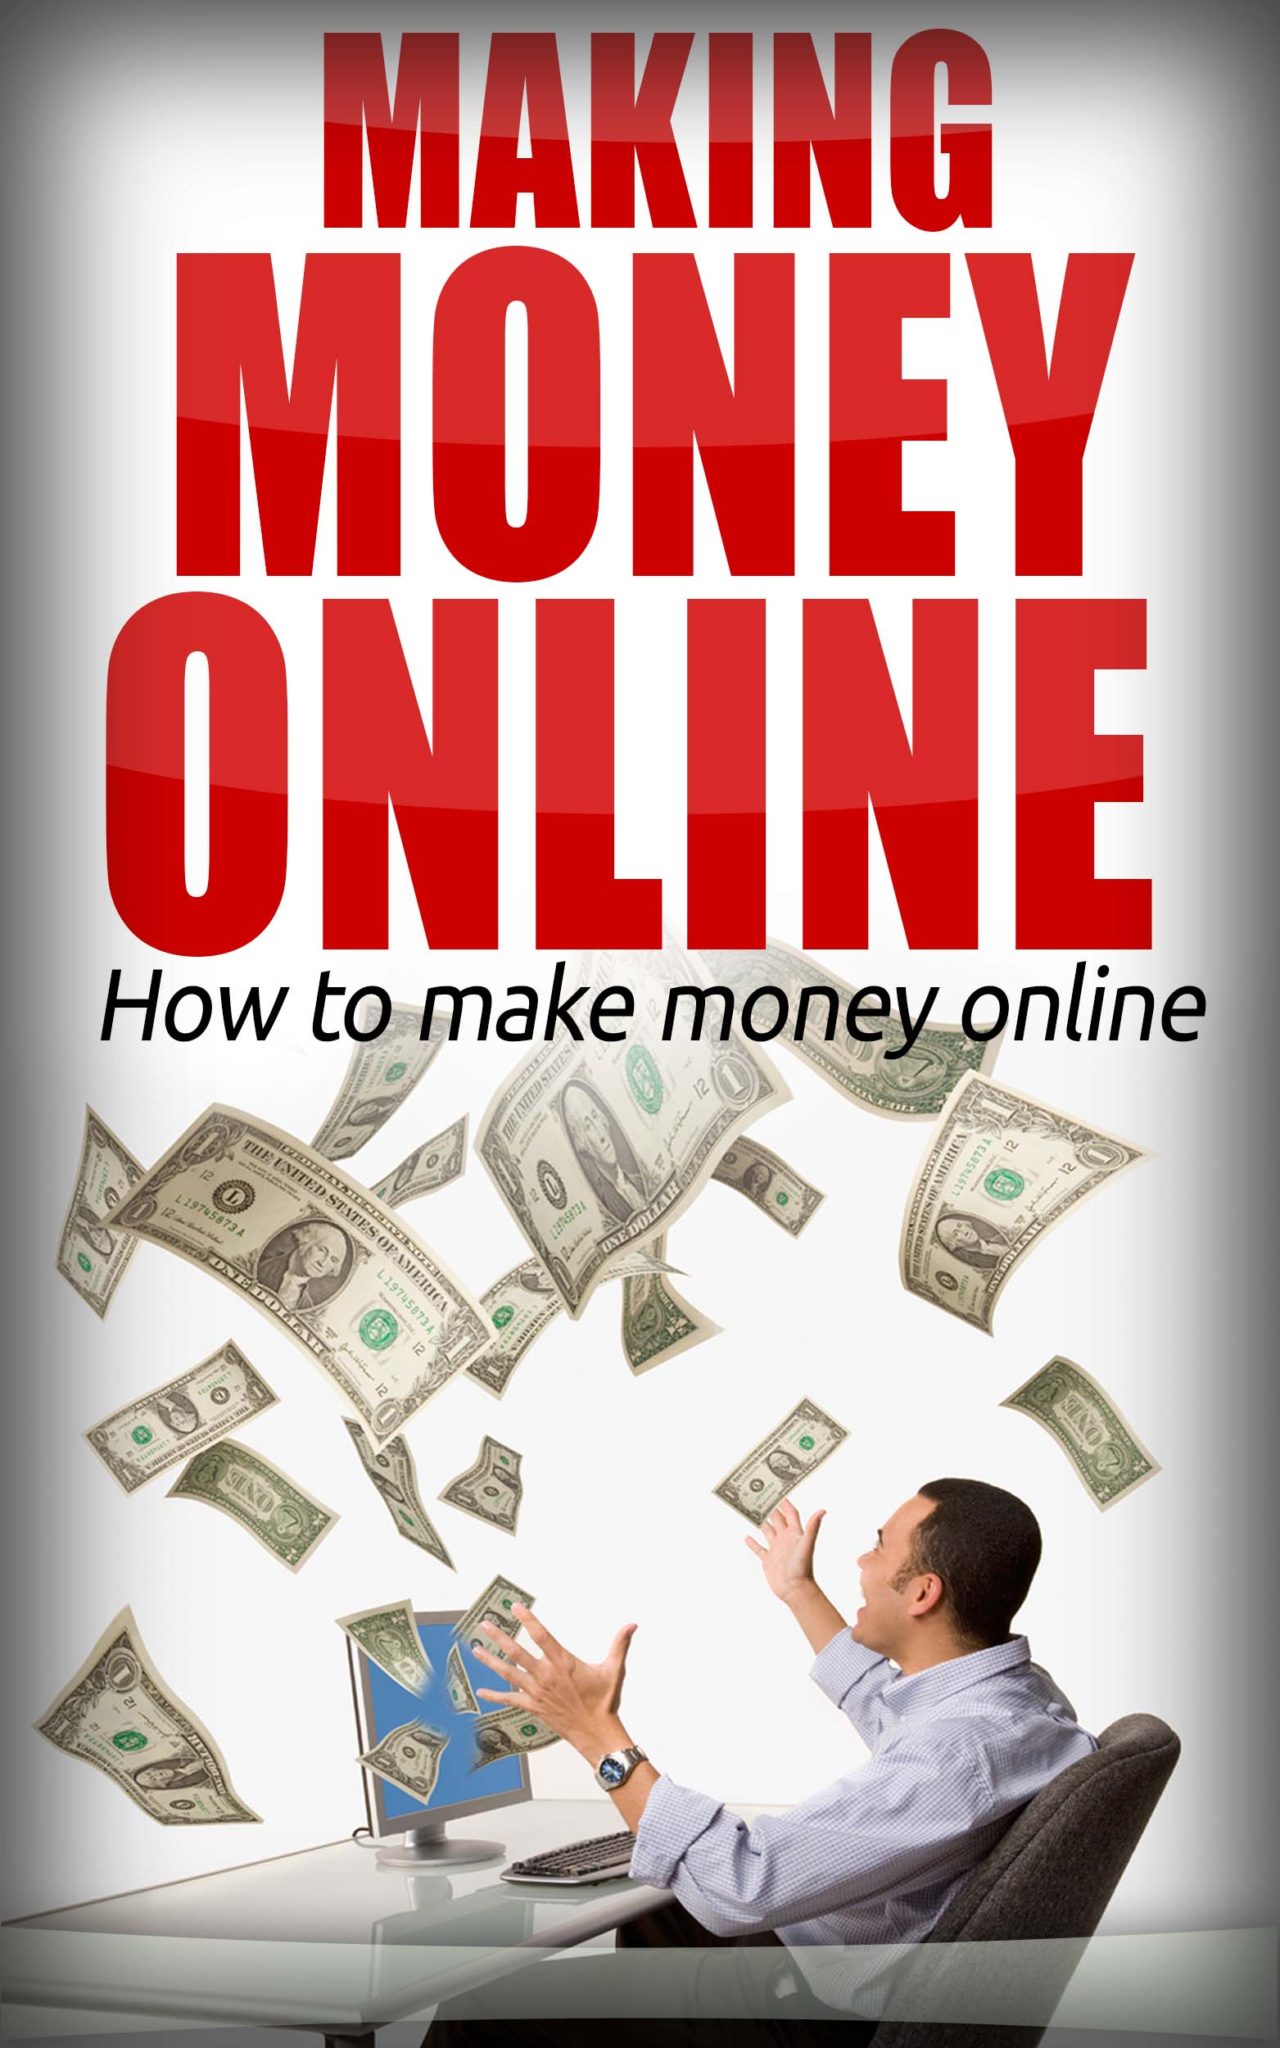 FREE: Making money online by Jaafa Ben